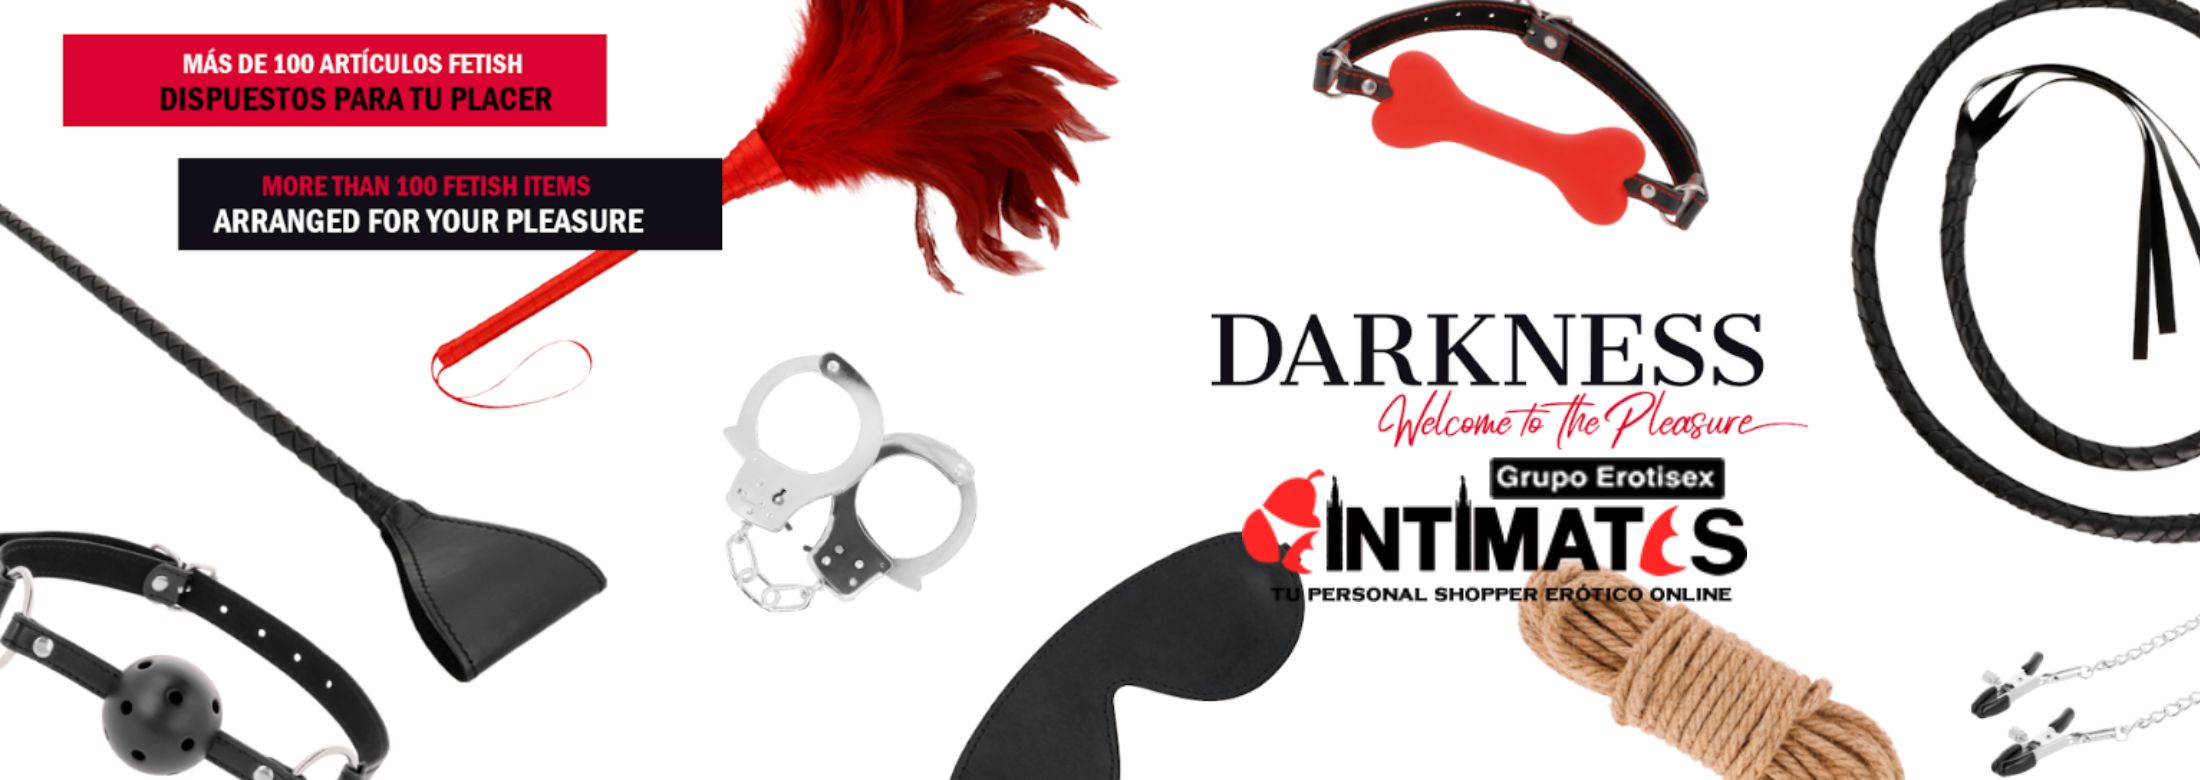 Darkness Sensations, artículos que puedes adquirir en intimates.es "Tu Personal Shopper Erótico"